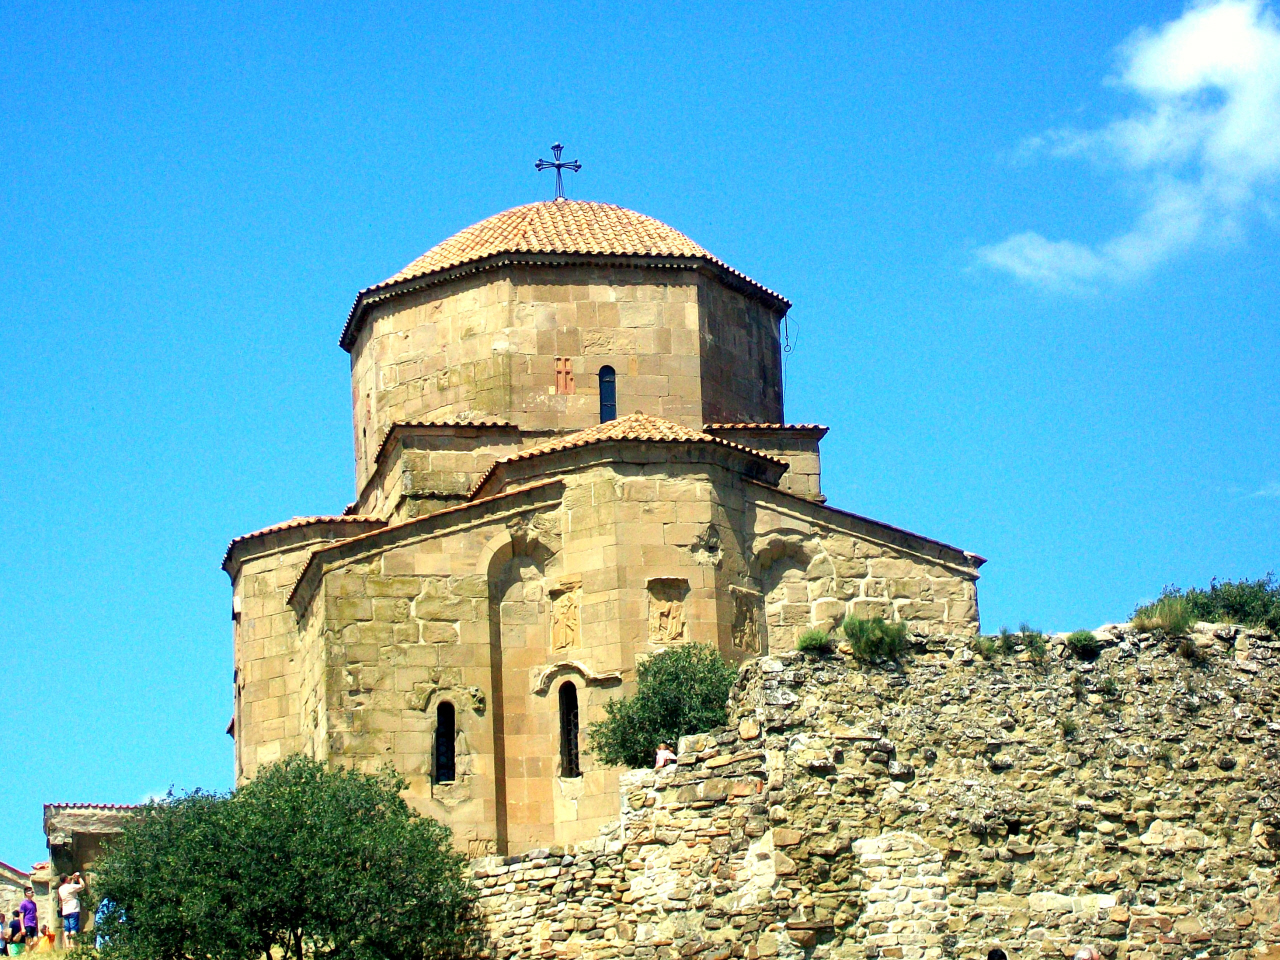 Jvari Church (4th Cen. A.D.) King Miriam erected A Cross After His Converion by St. Nino - Mtskheta, Georgia